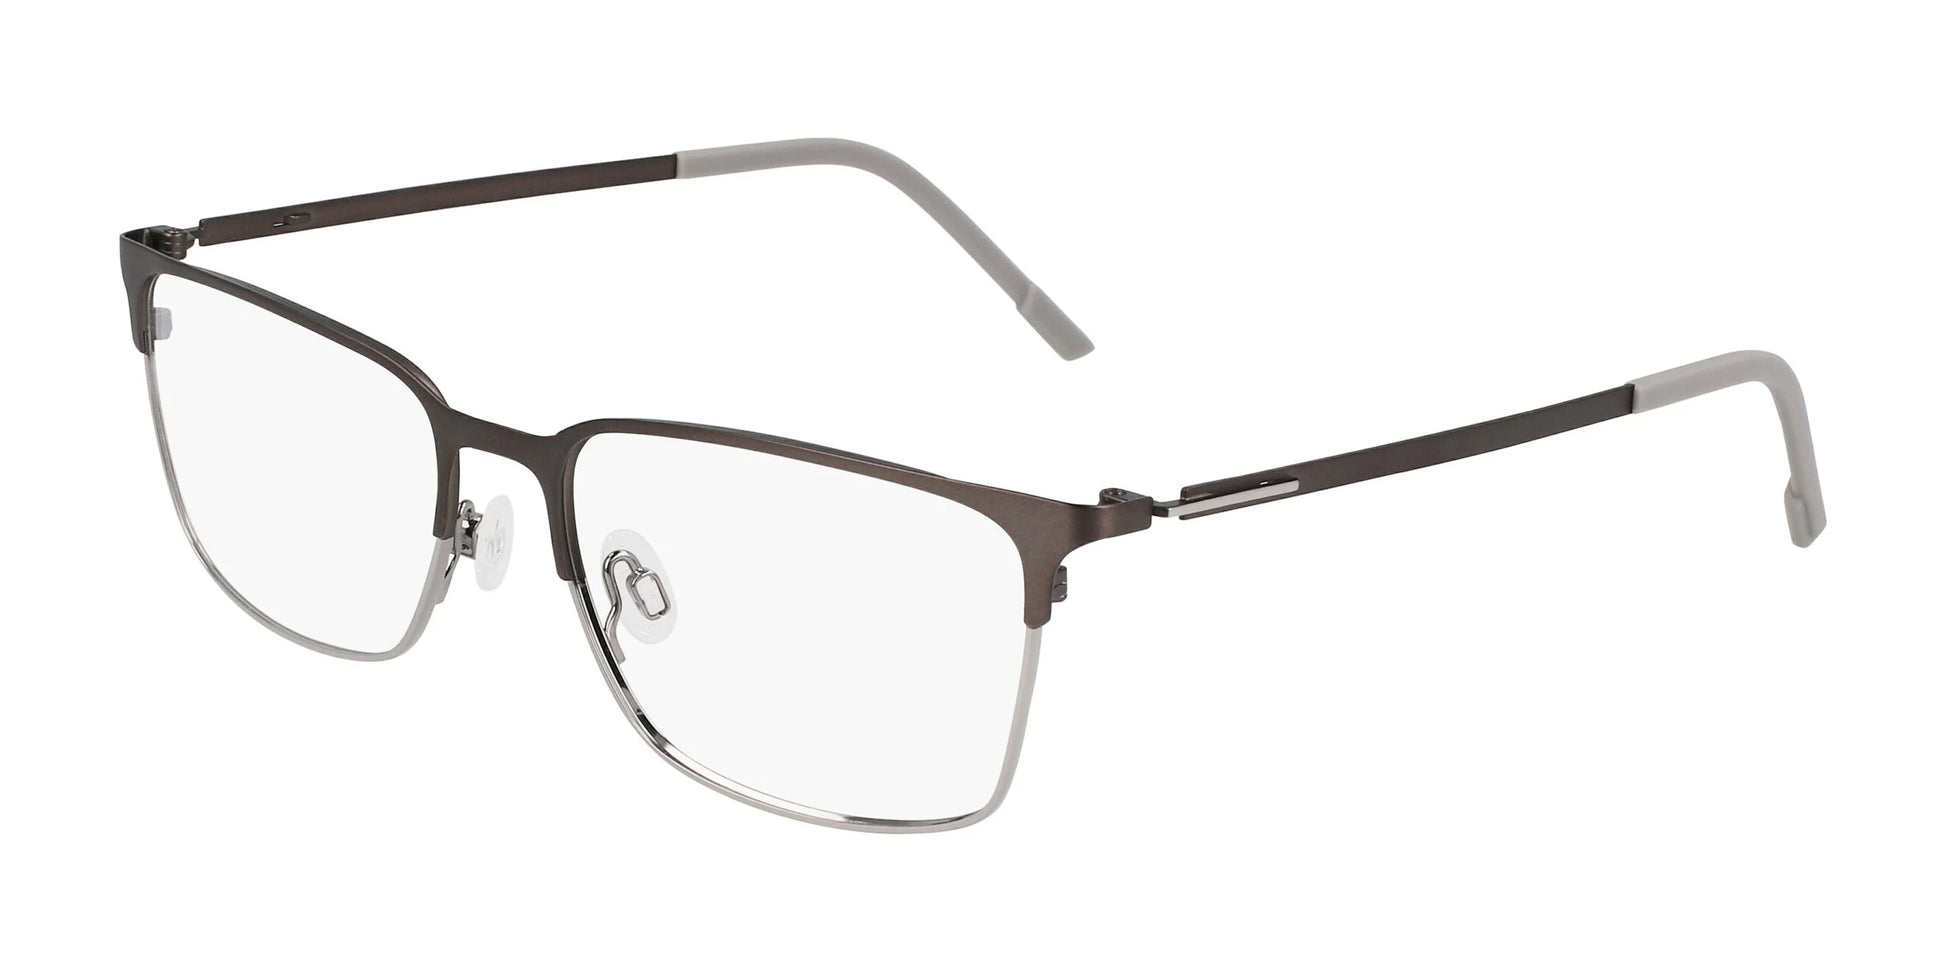 Flexon E1147 Eyeglasses Matte Gunmetal / Silver